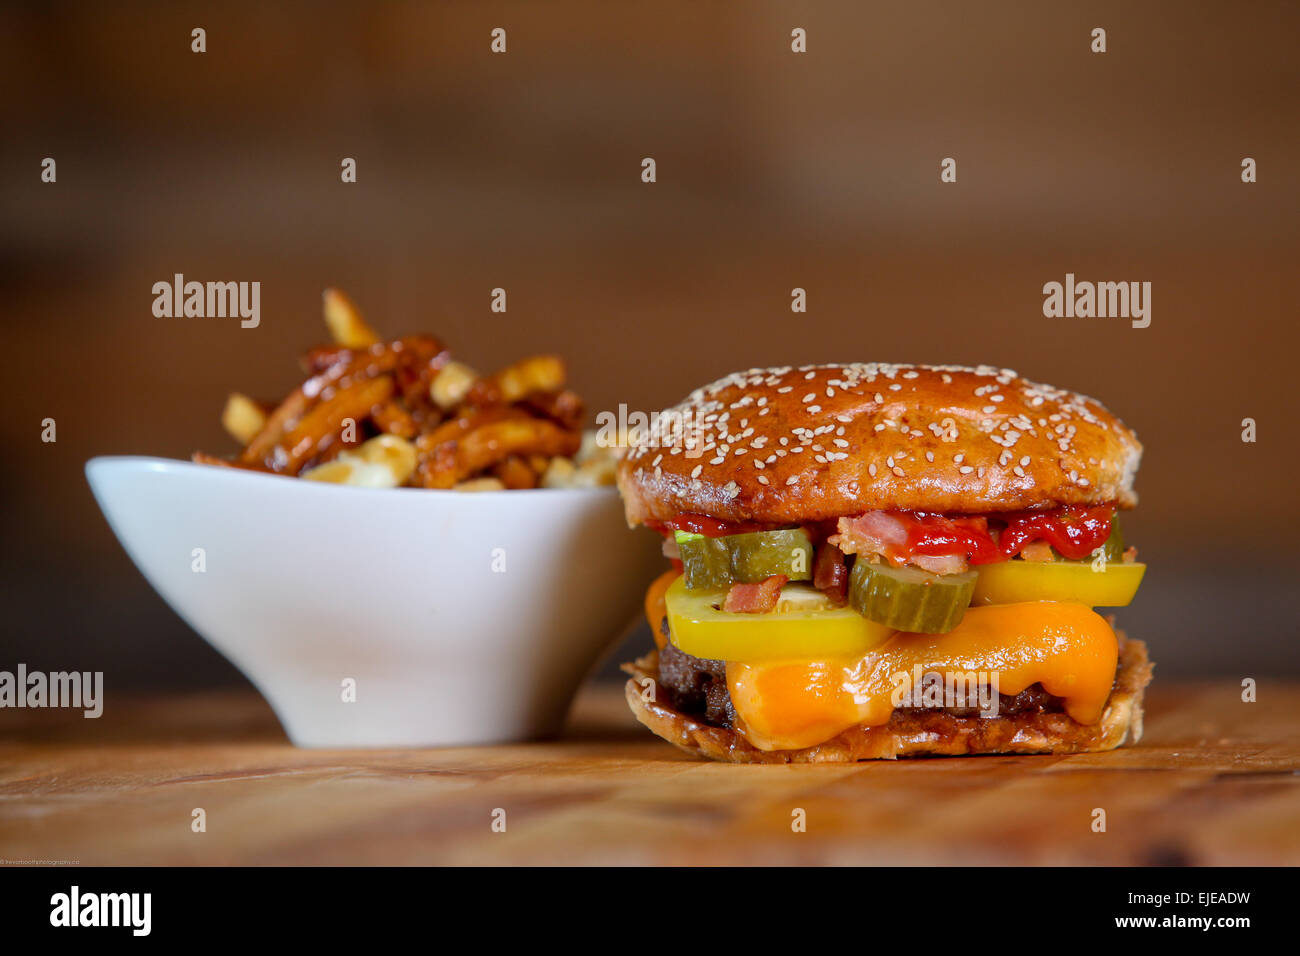 Bacon Cheeseburger mit Beilage Poutine Pommes Frites. Stockfoto